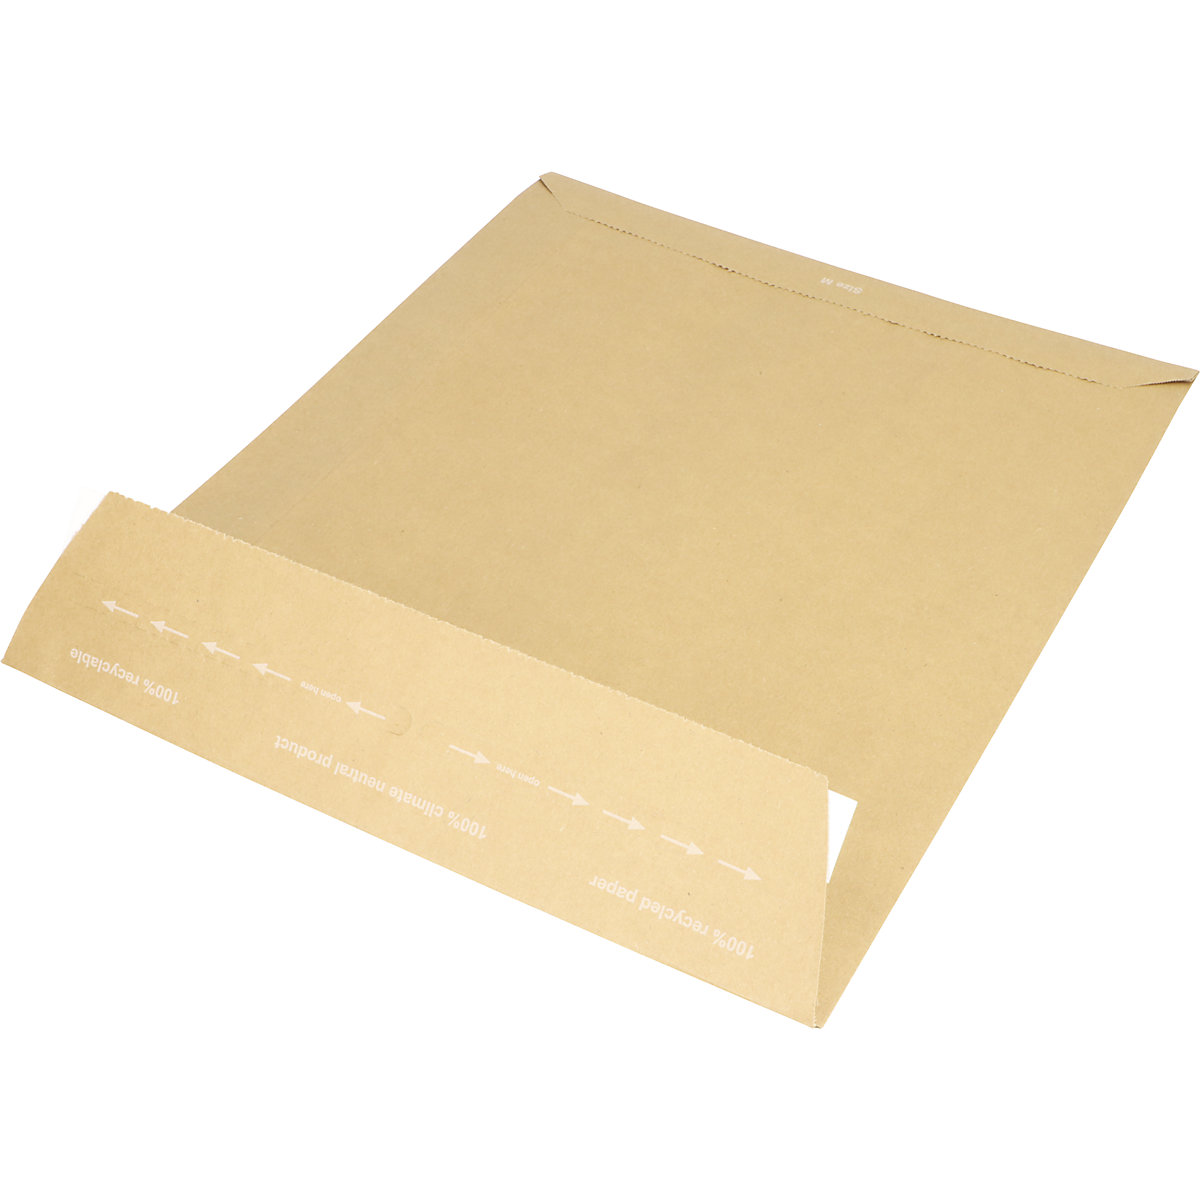 Versandtasche aus Papier E-Commerce terra, retourengeeignet, LxB 420 x 340 mm, VE 200 Stk-3